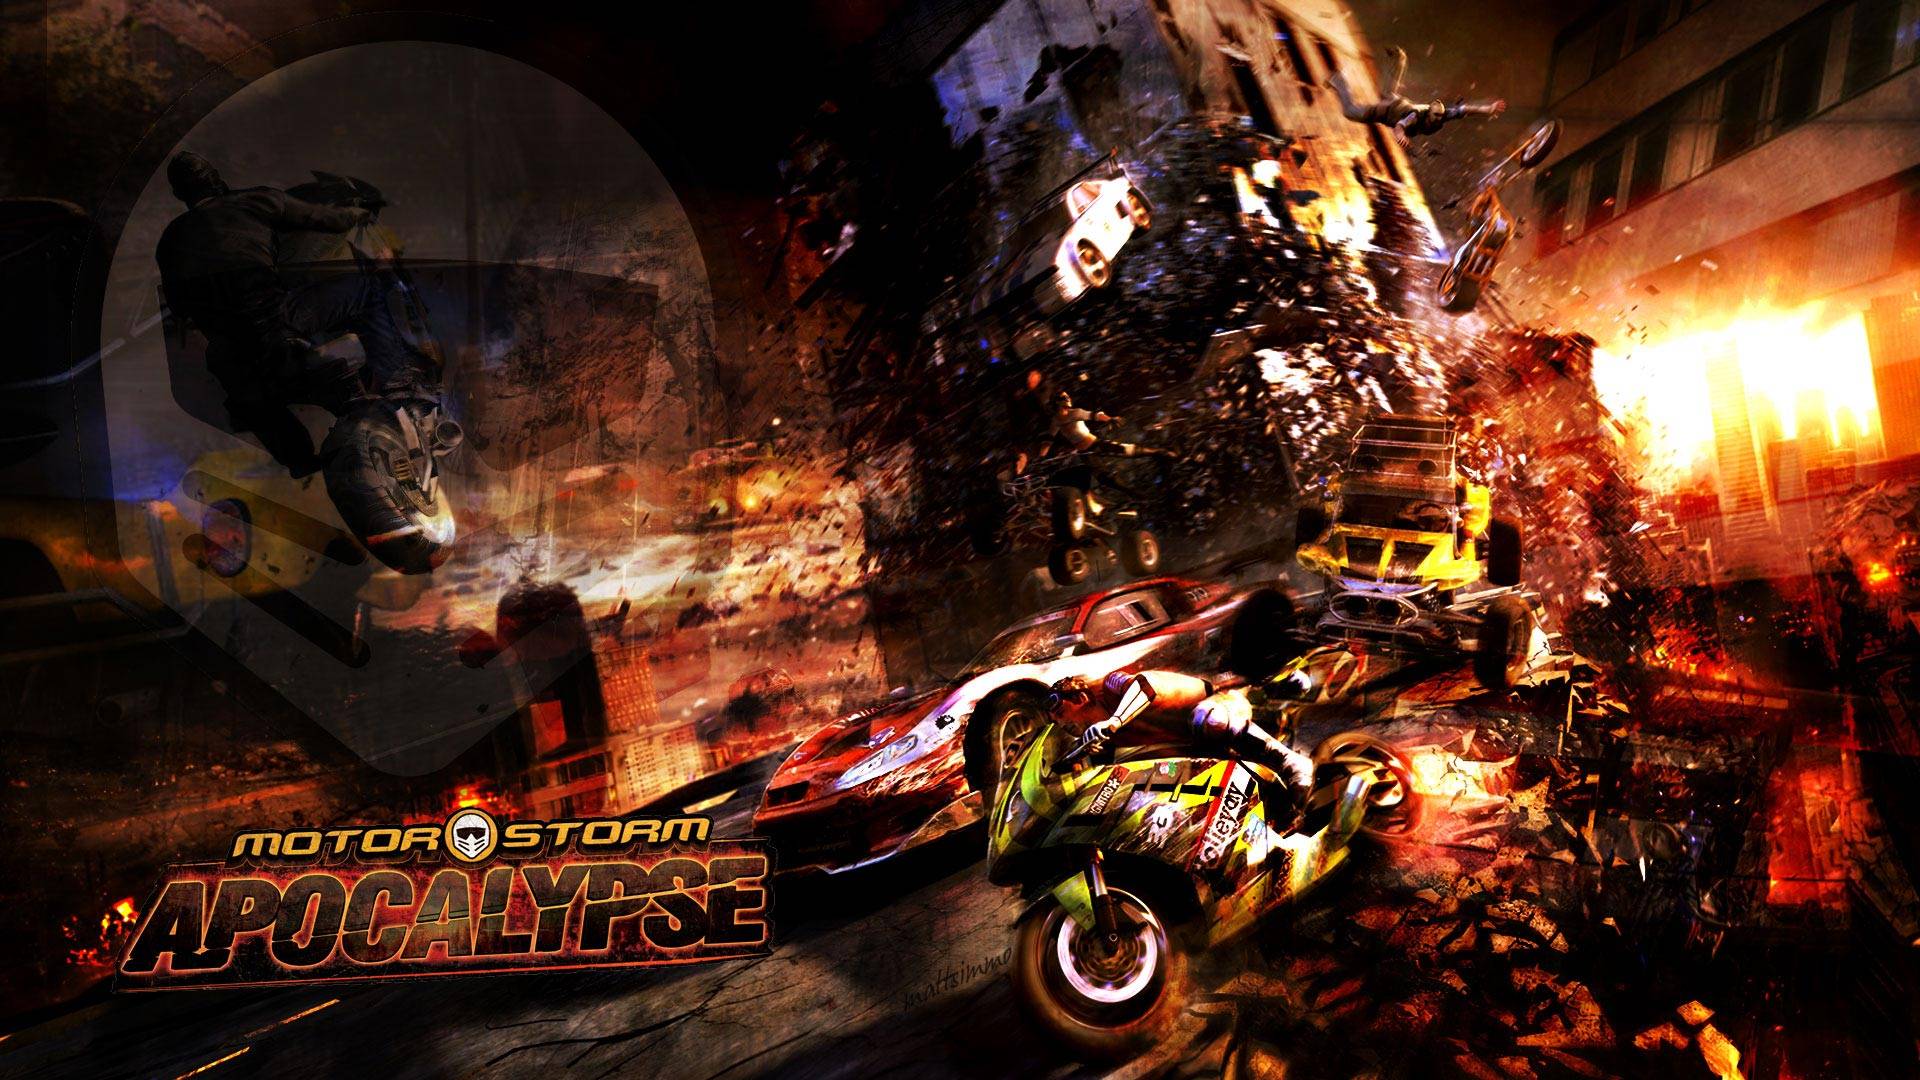 Motorstorm Apocalypse Wallpaper in full 1080P HD « GamingBolt.com